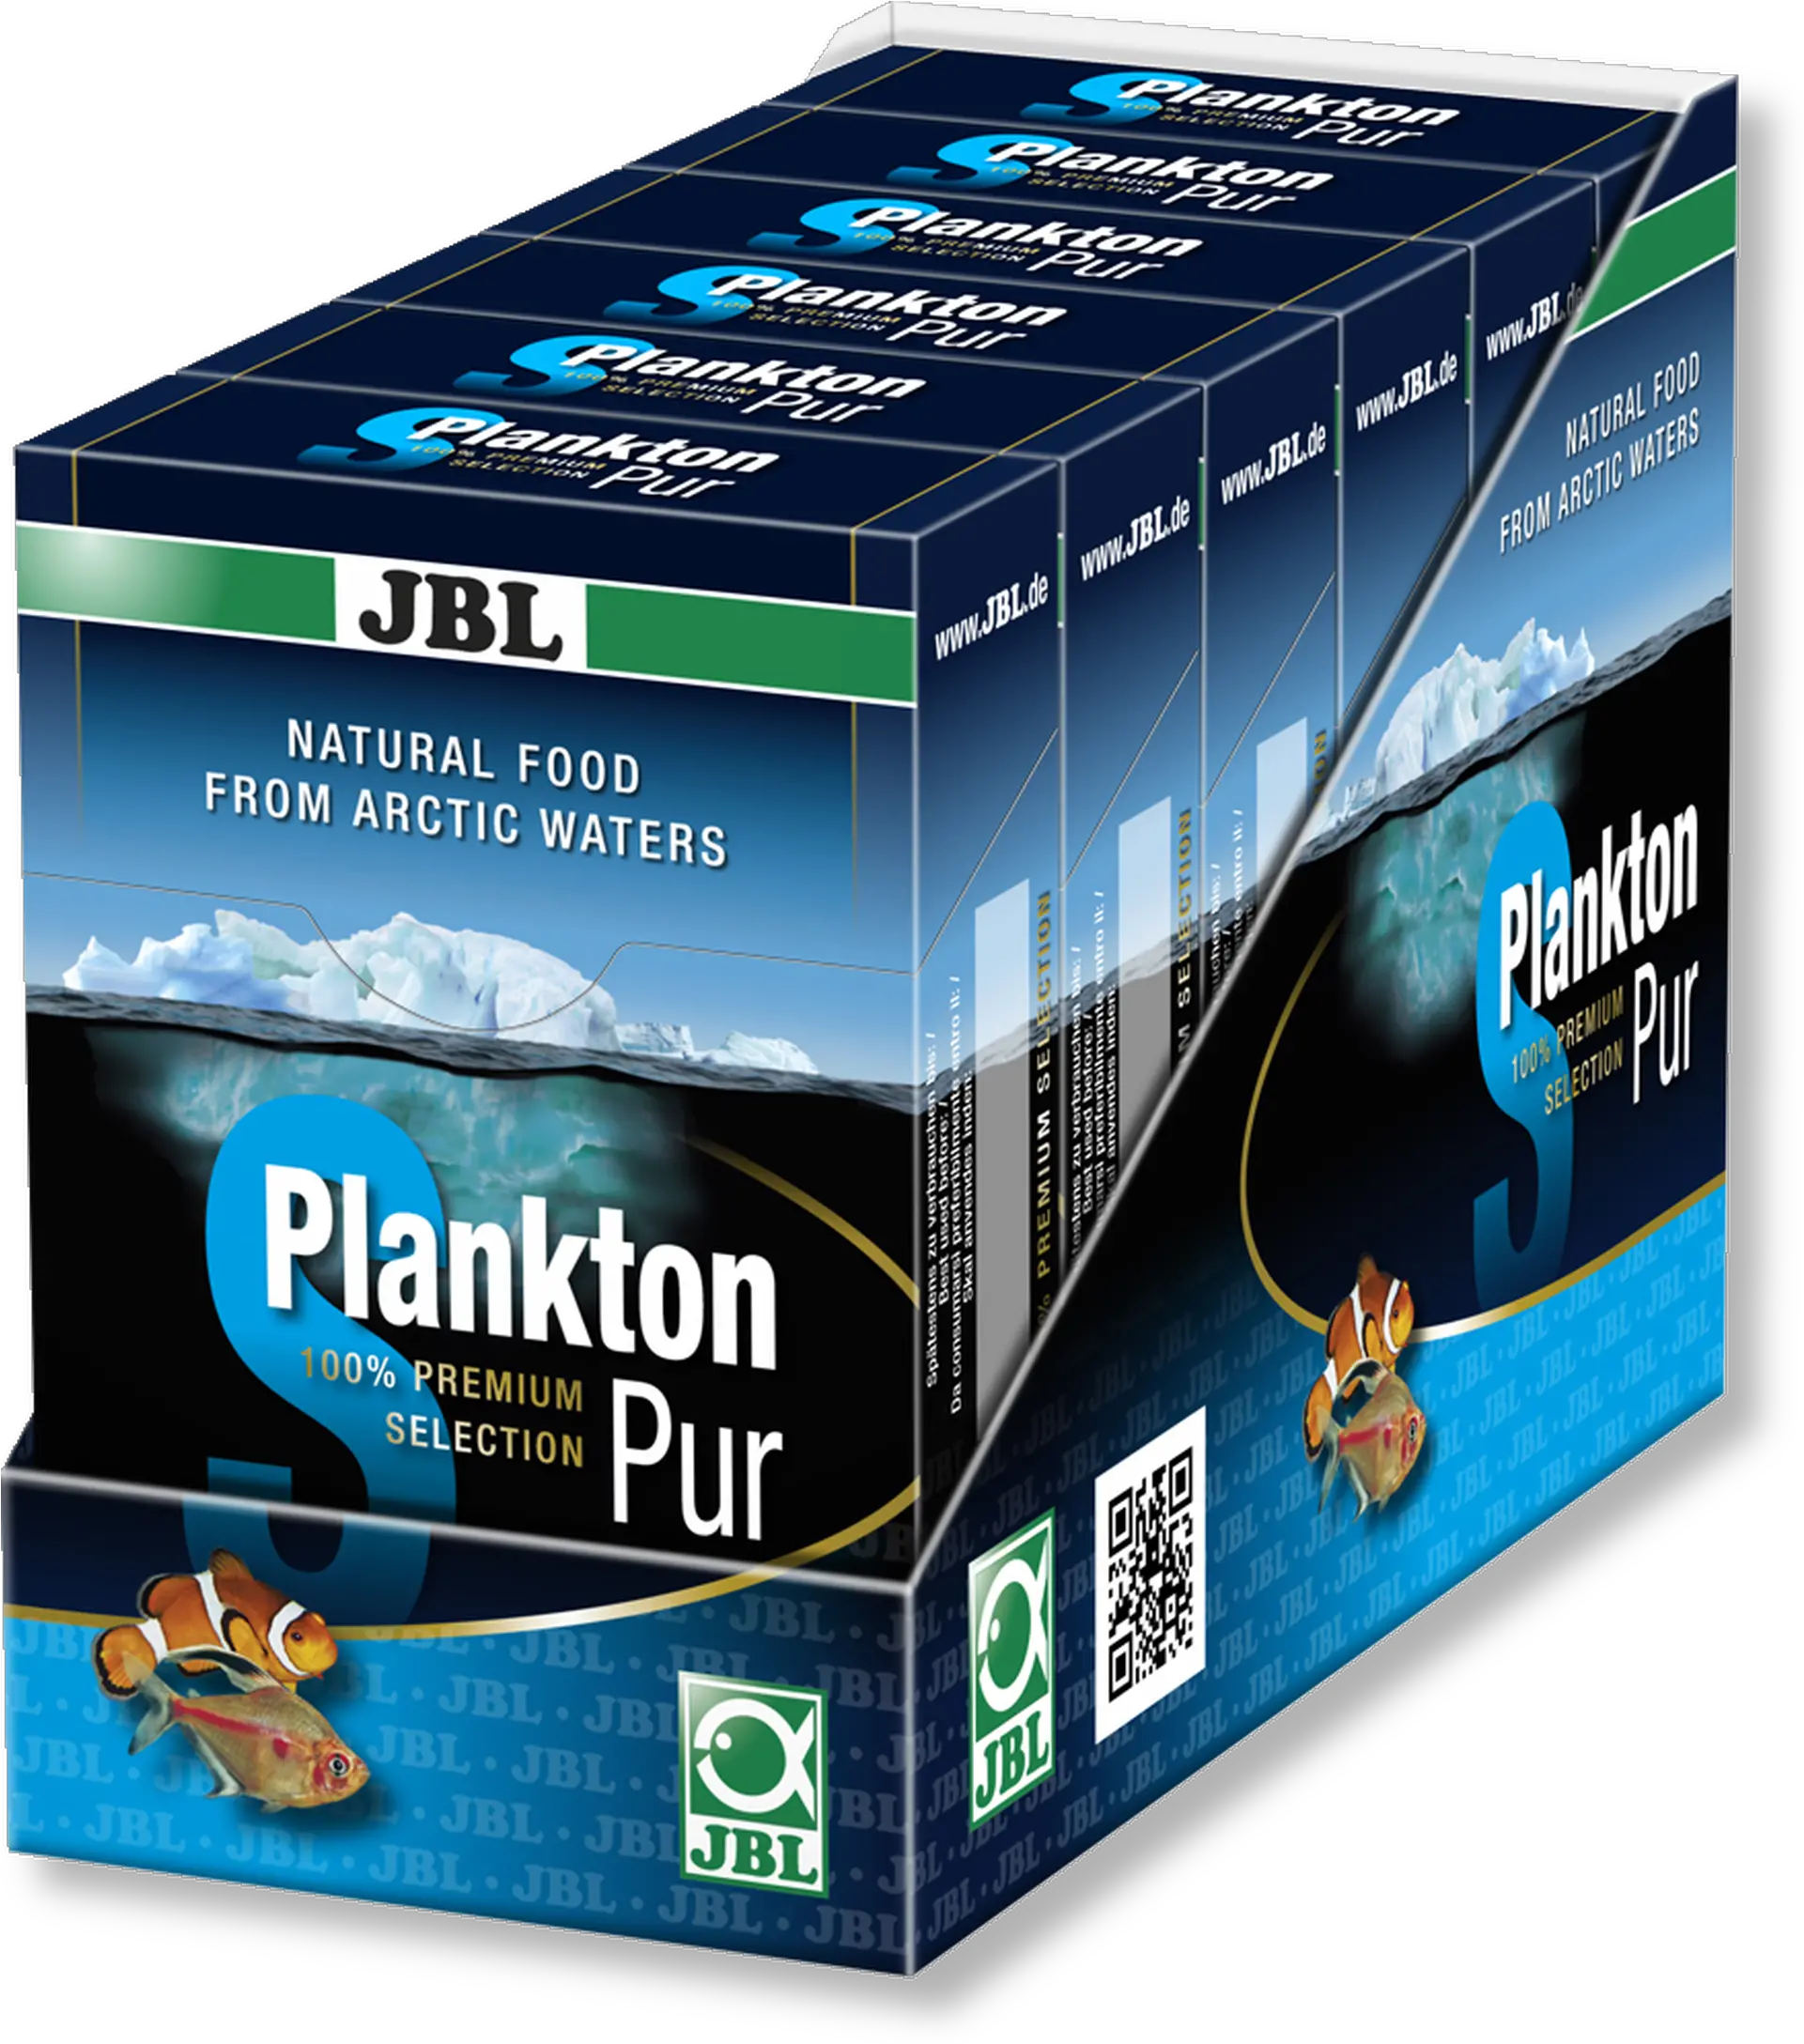 Img H13762659 Altu003du003e Jbl Planktonpur Plankton Pur S Jbl Planktonpur M 16g Png Plankton Png